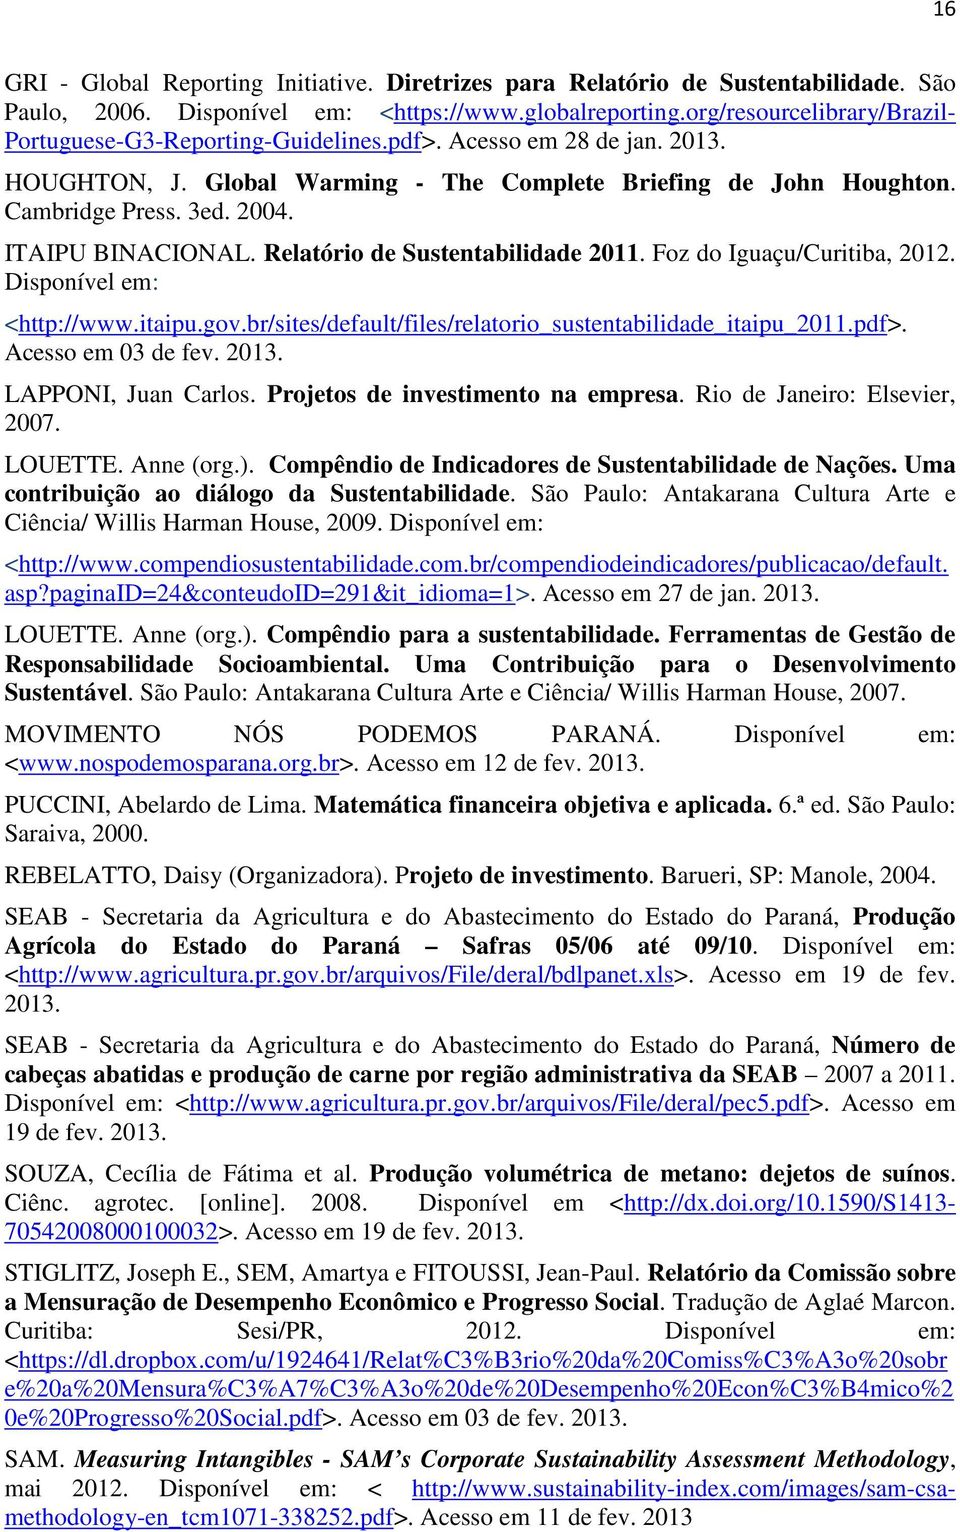 ITAIPU BINACIONAL. Relatório de Sustentabilidade 2011. Foz do Iguaçu/Curitiba, 2012. Disponível em: <http://www.itaipu.gov.br/sites/default/files/relatorio_sustentabilidade_itaipu_2011.pdf>.